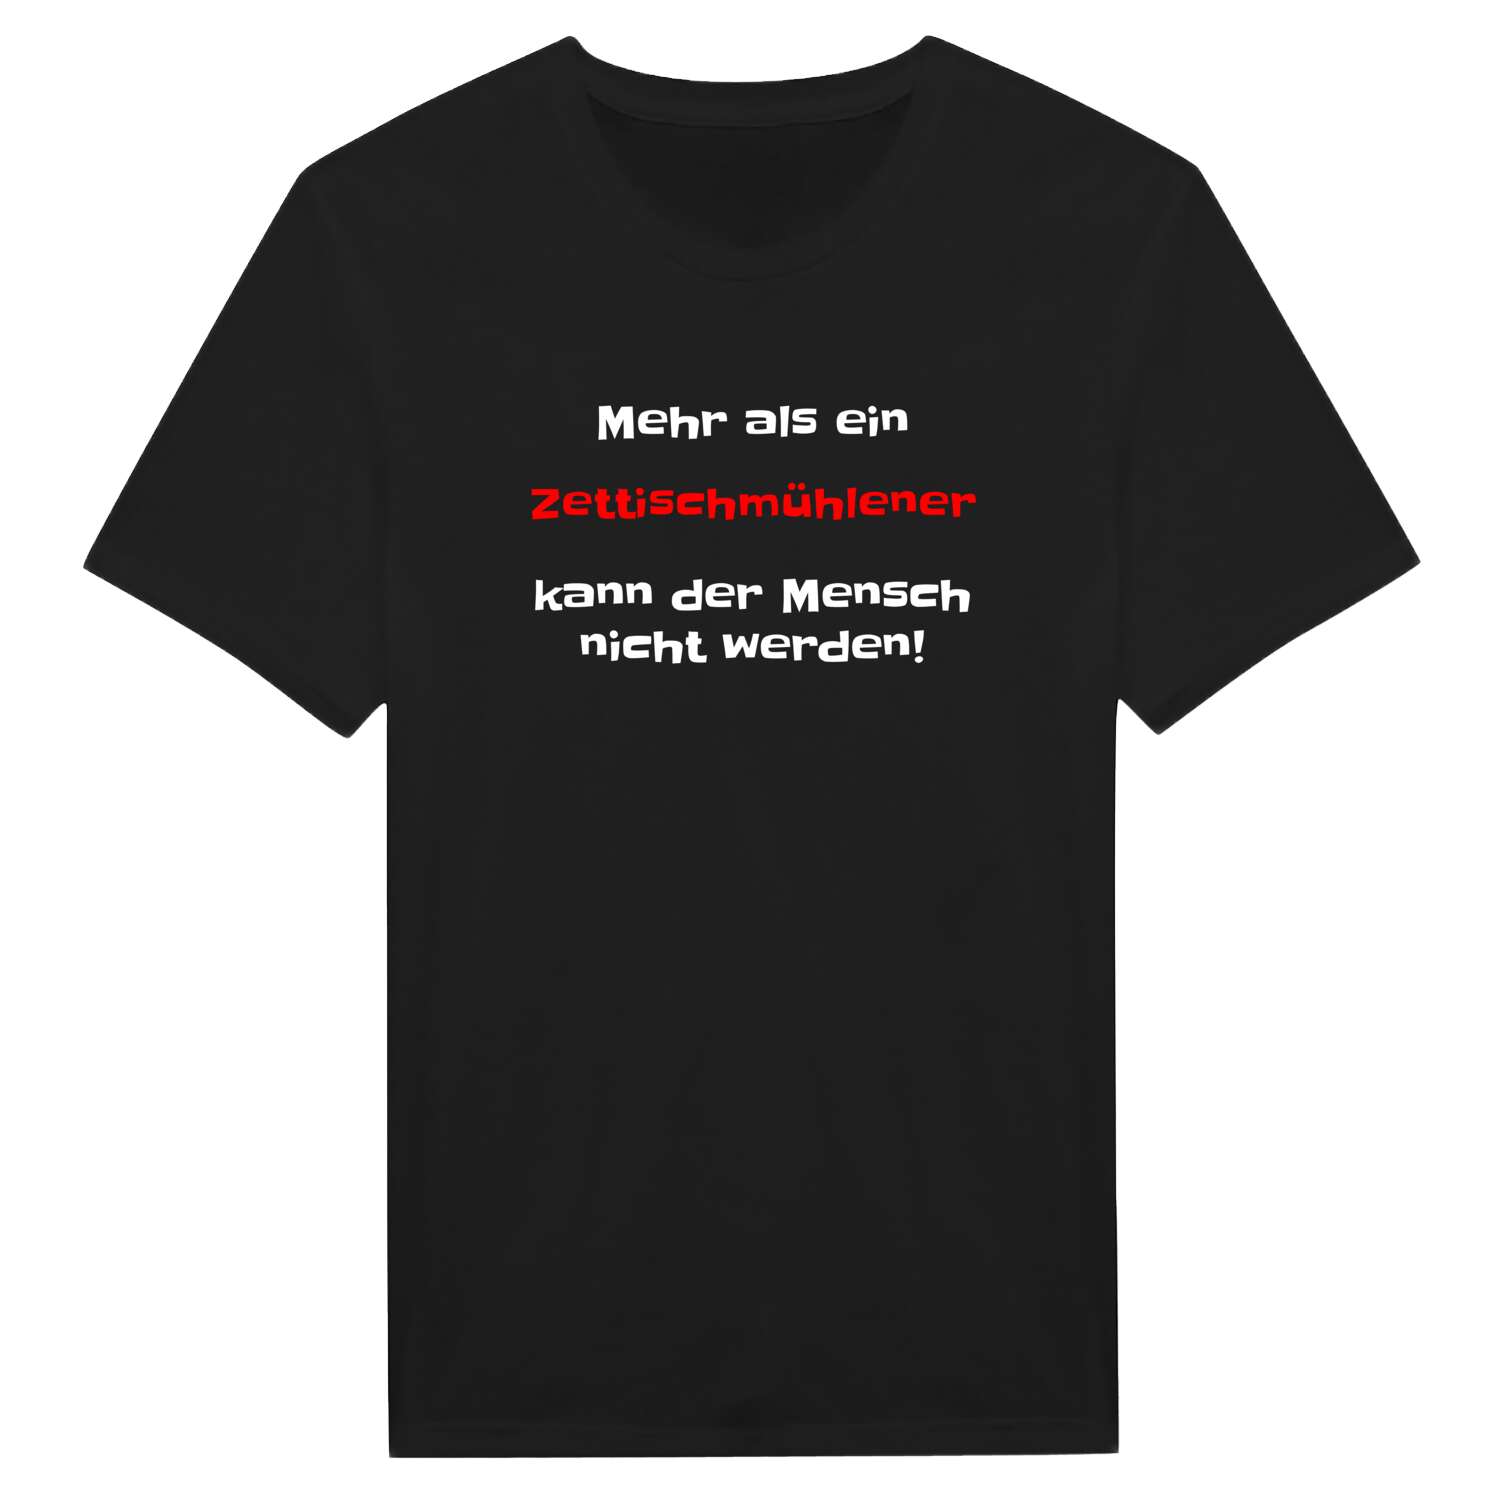 Zettischmühle T-Shirt »Mehr als ein«